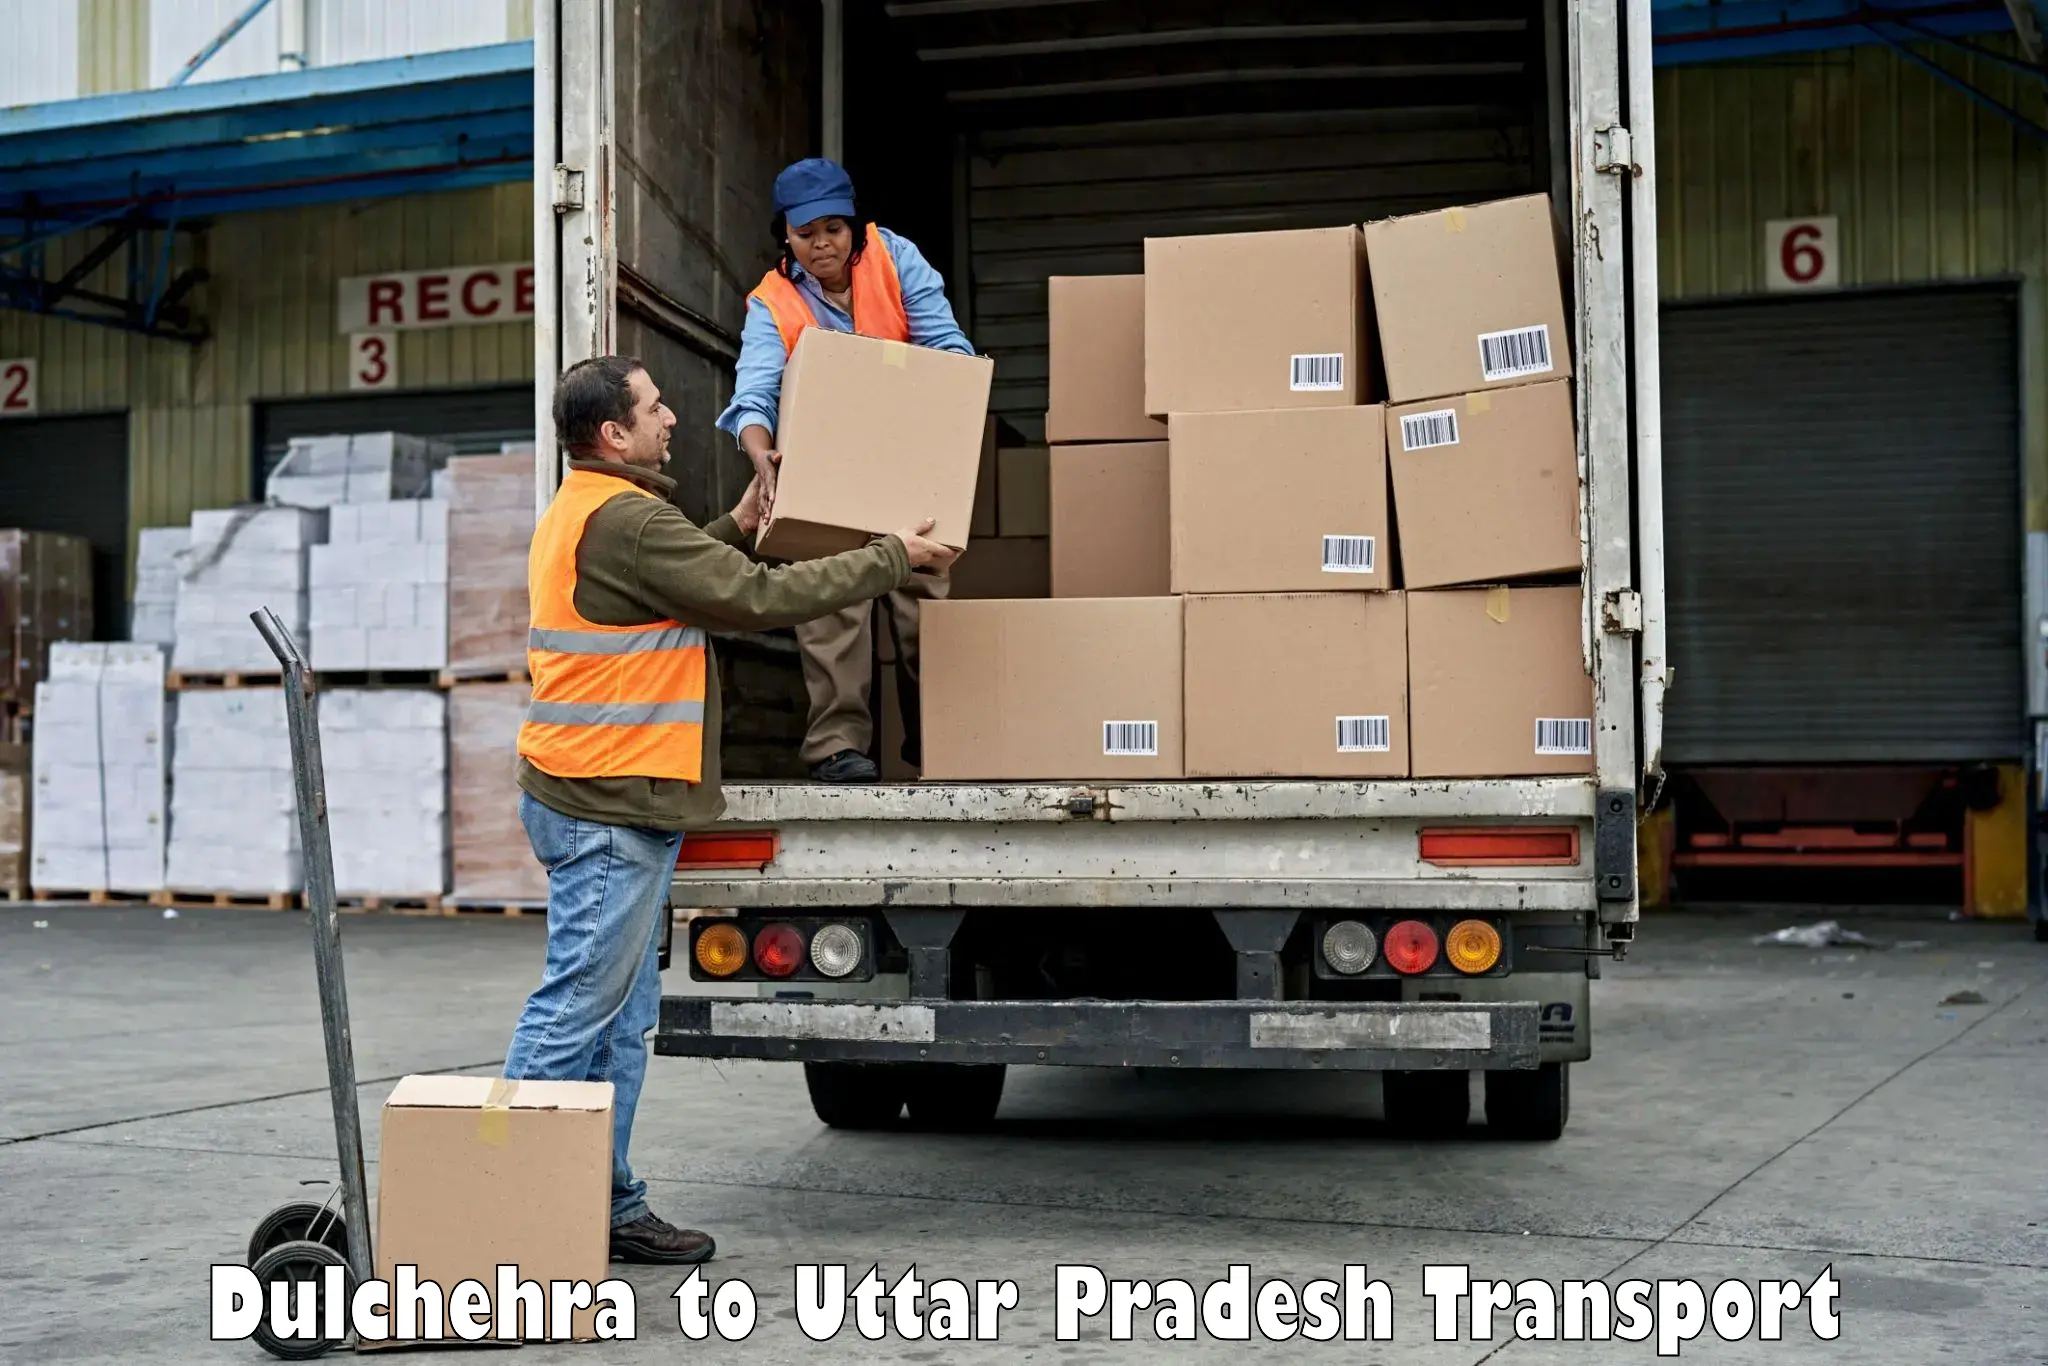 Nationwide transport services Dulchehra to Harraiya